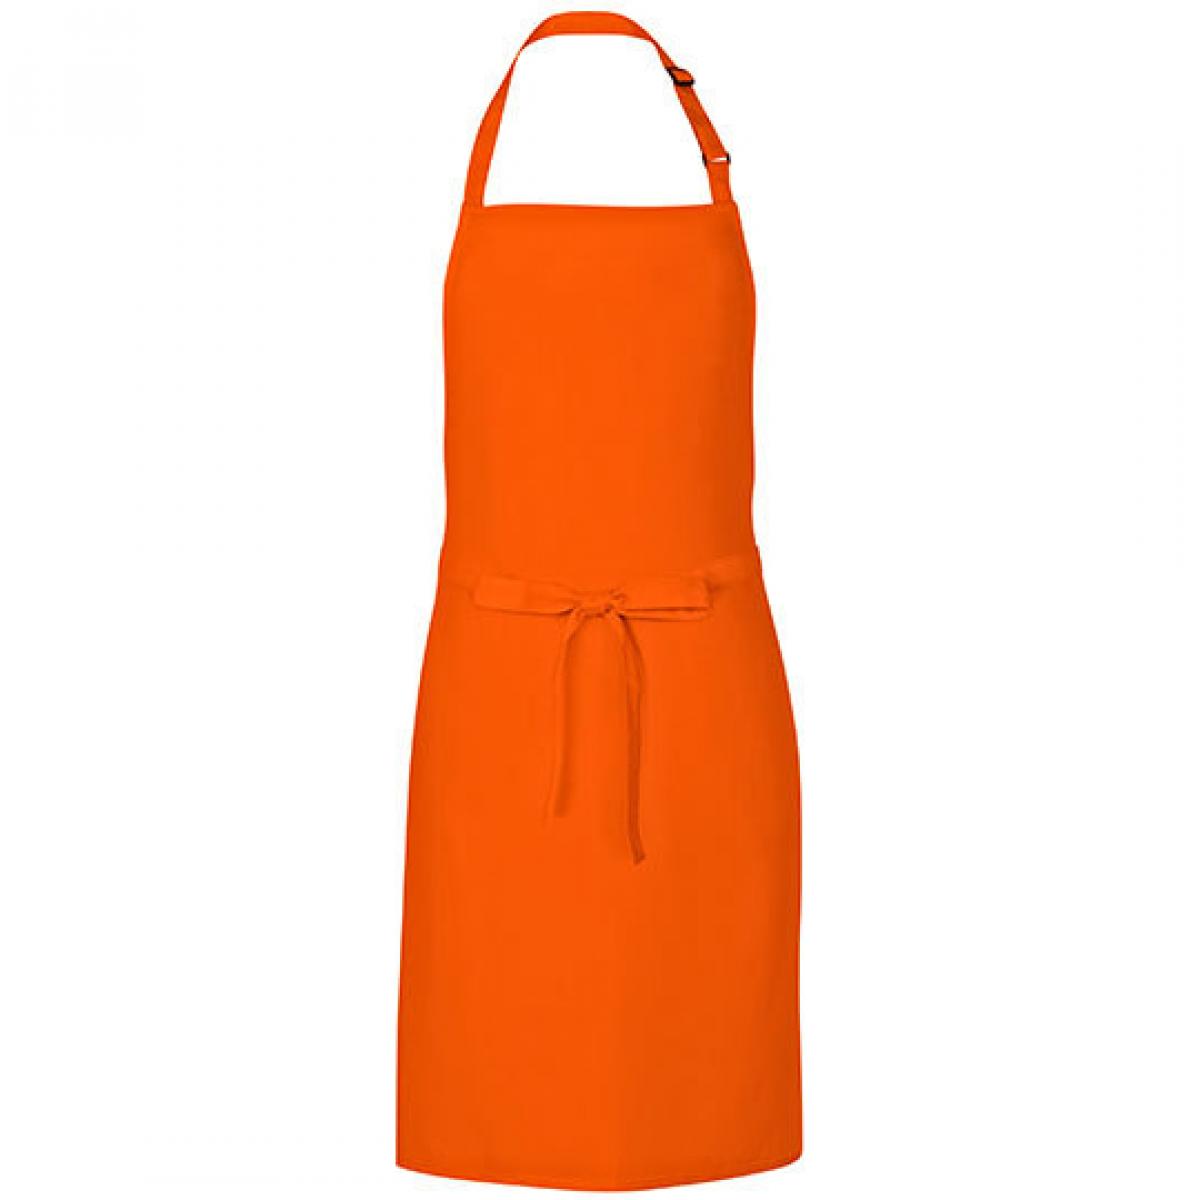 Hersteller: Link Kitchen Wear Herstellernummer: MS8572 Artikelbezeichnung: Multi Apron - 72 x 85 cm - Waschbar bis 60 °C Farbe: Orange (ca. Pantone 1655)